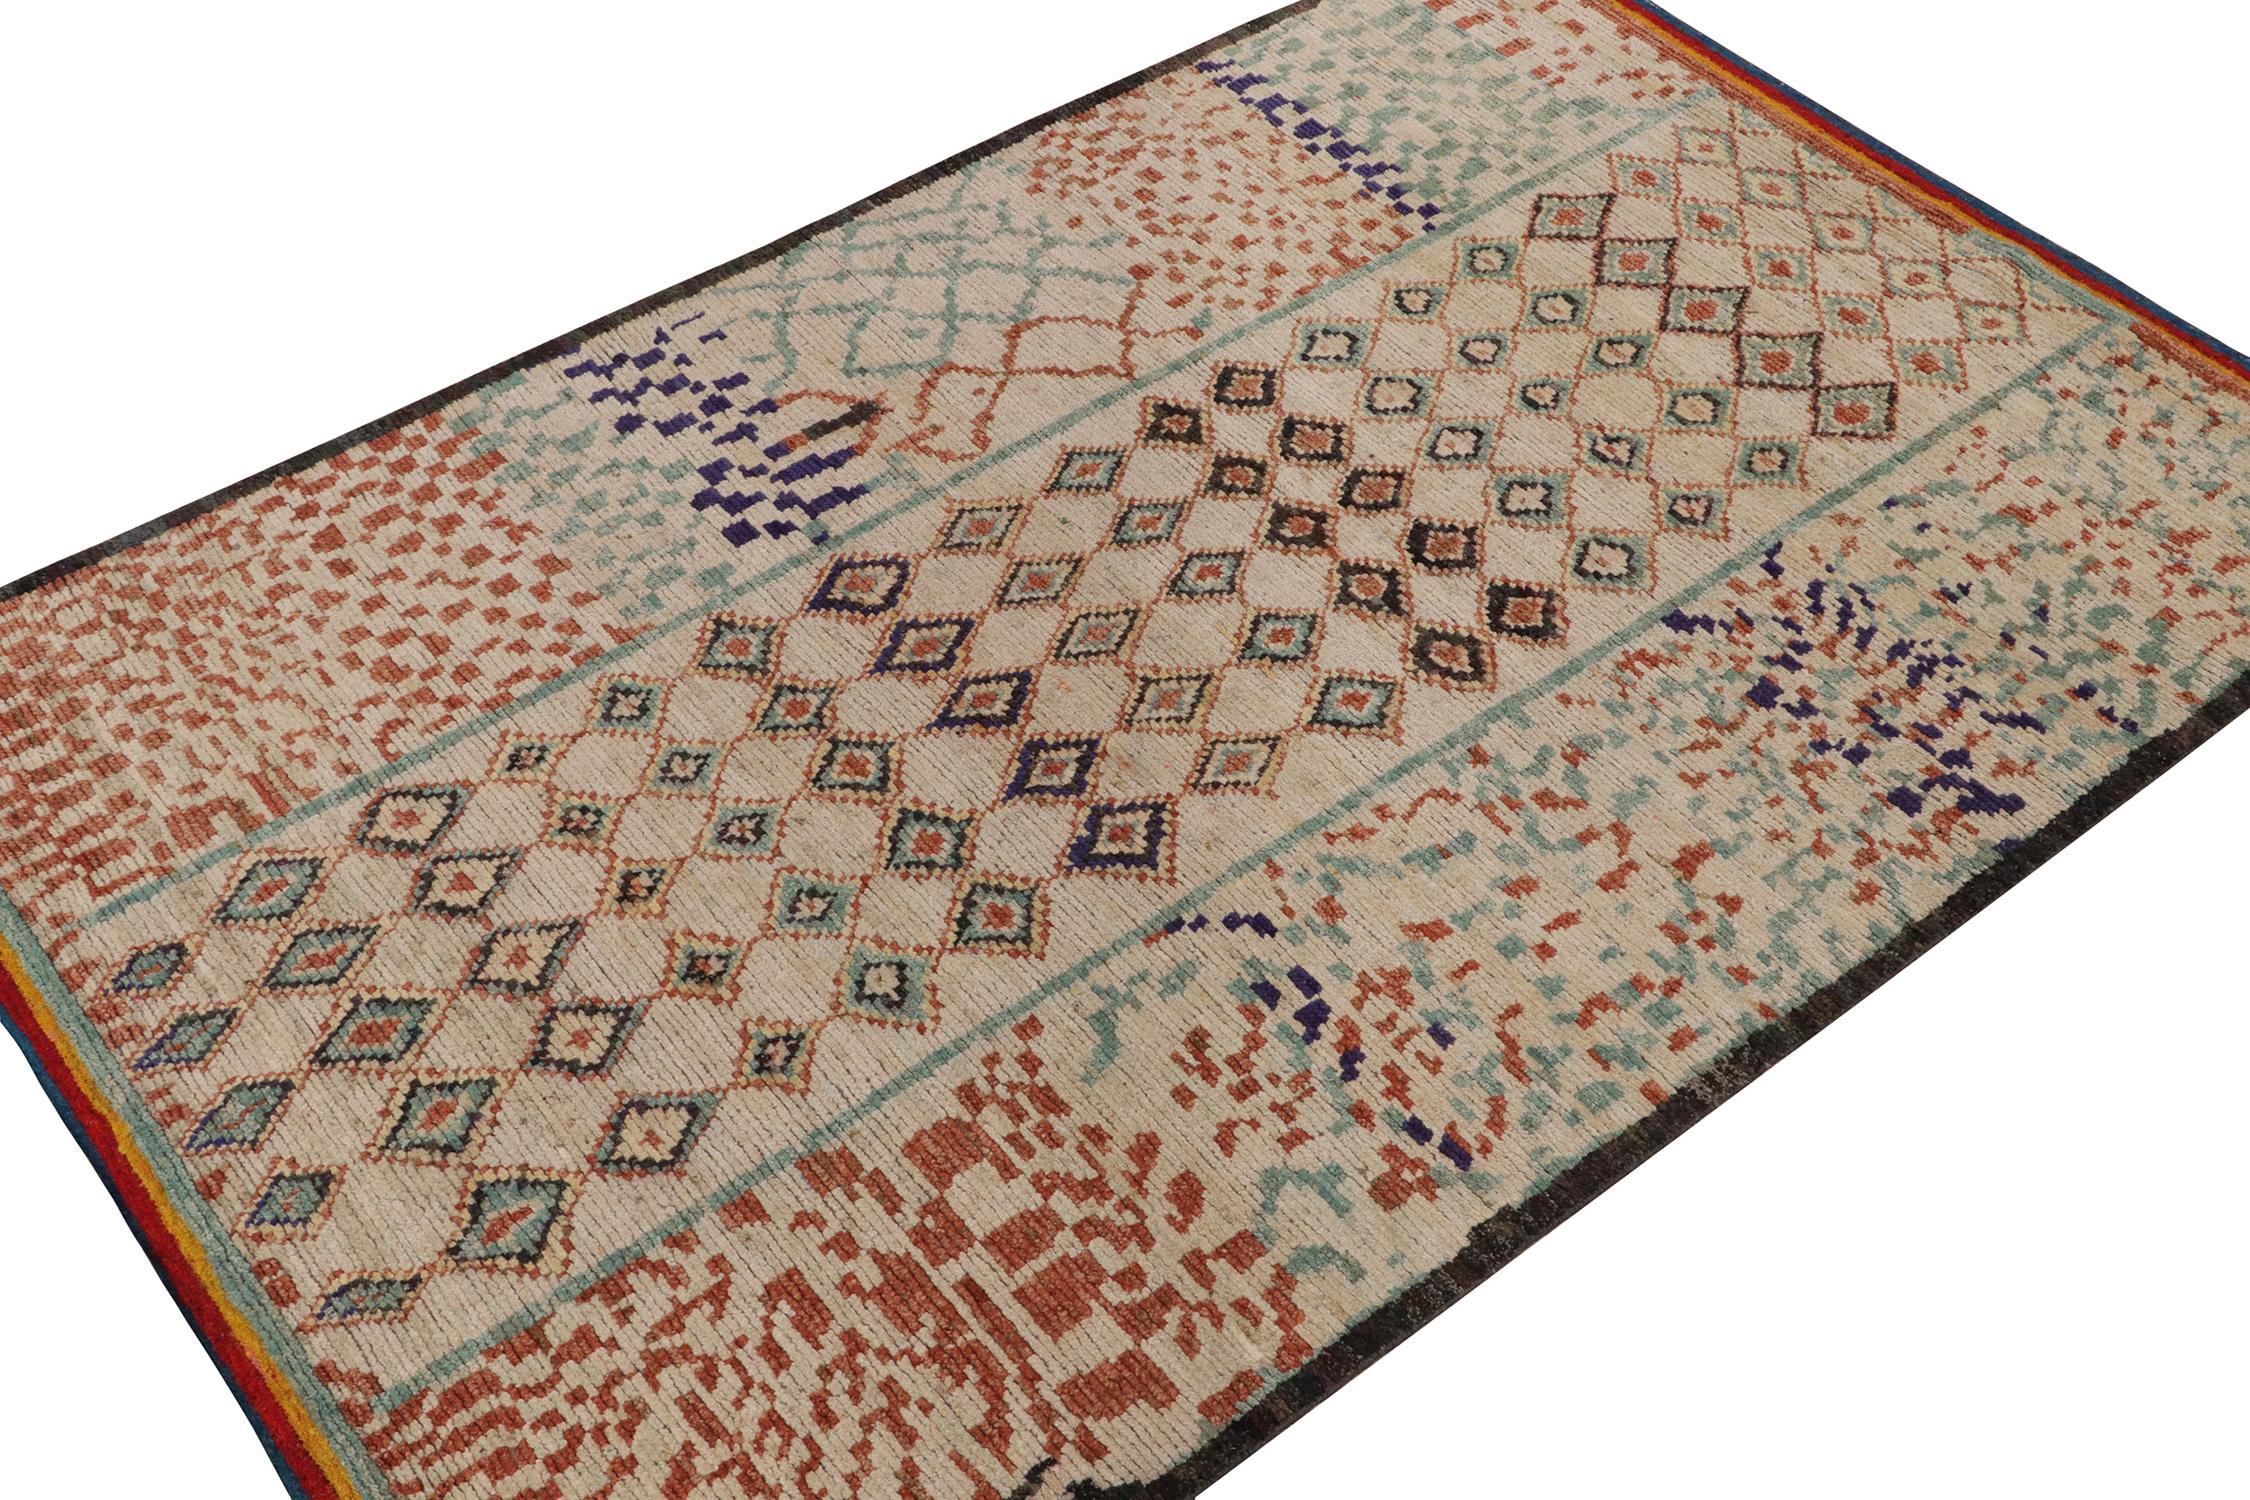 Ce tapis contemporain 6x9 est le dernier né de la nouvelle collection marocaine de Rug & Kilim, une version audacieuse de ce style emblématique. Noué à la main dans un mélange de laine, de soie et de coton.

Plus loin dans la conception :

Le